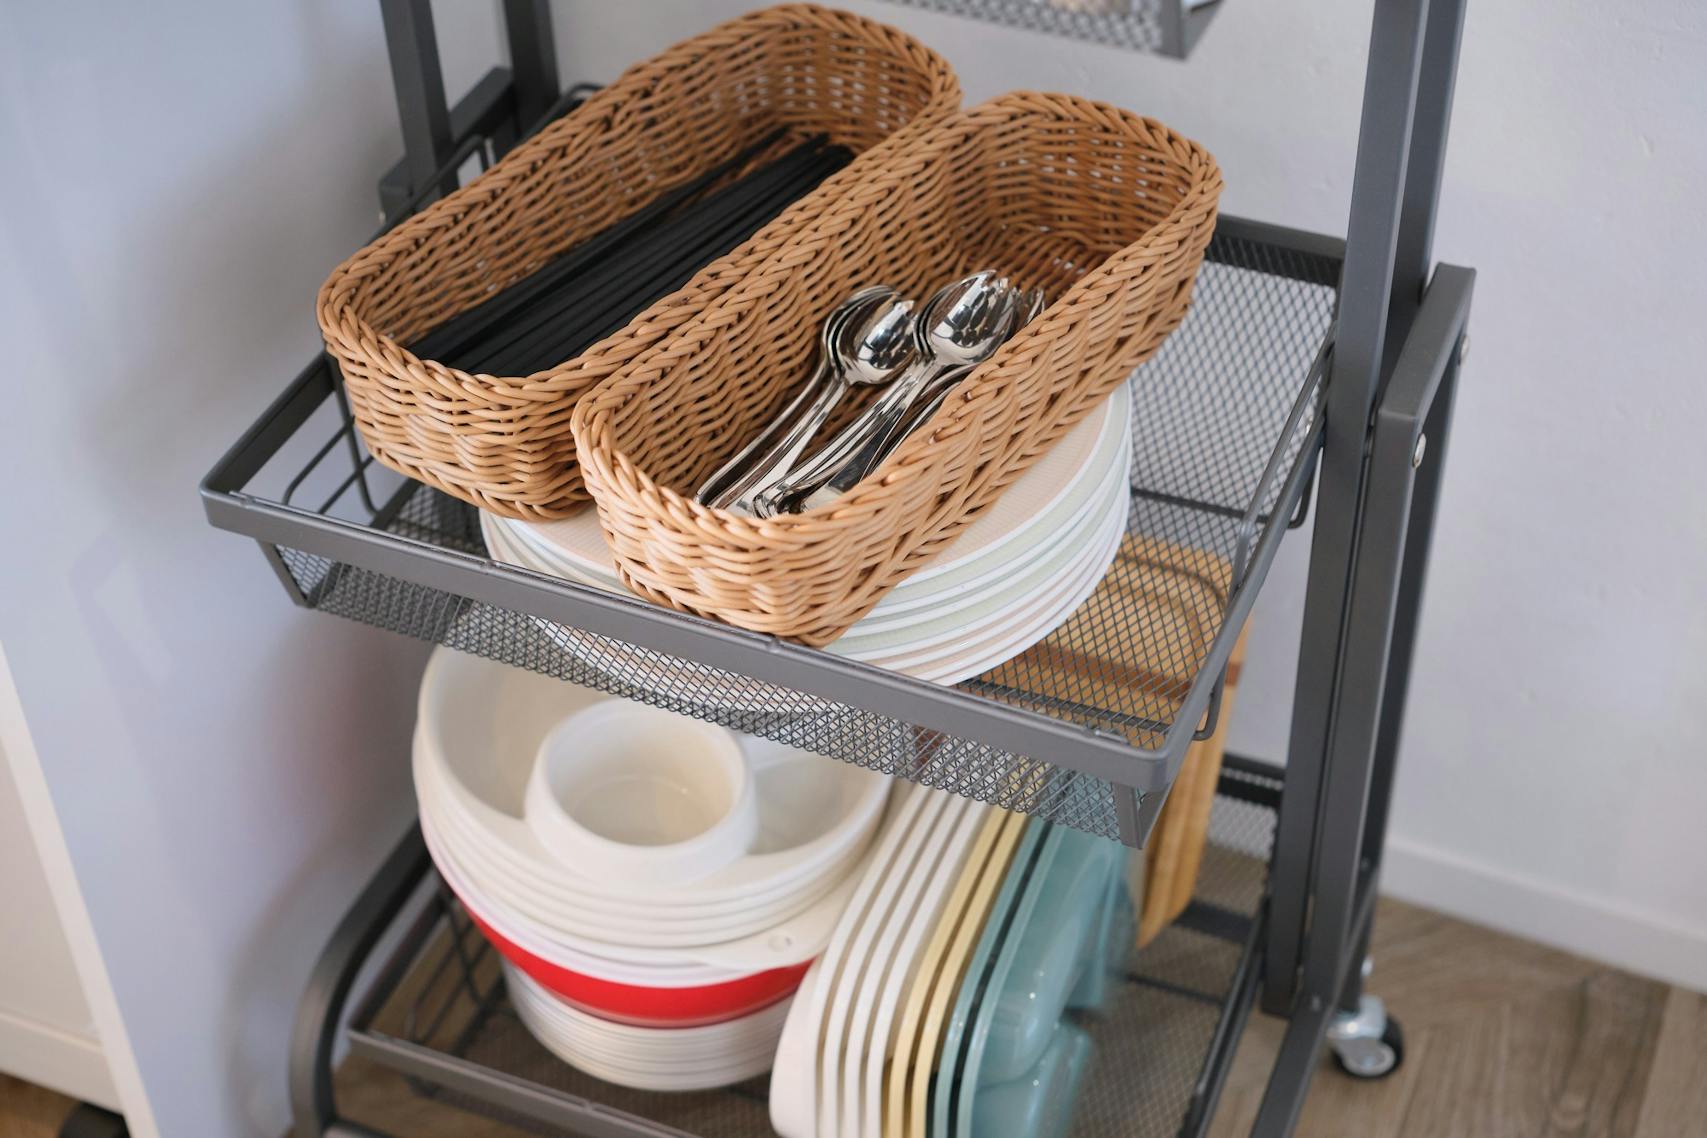 食器など Utensils and dishware